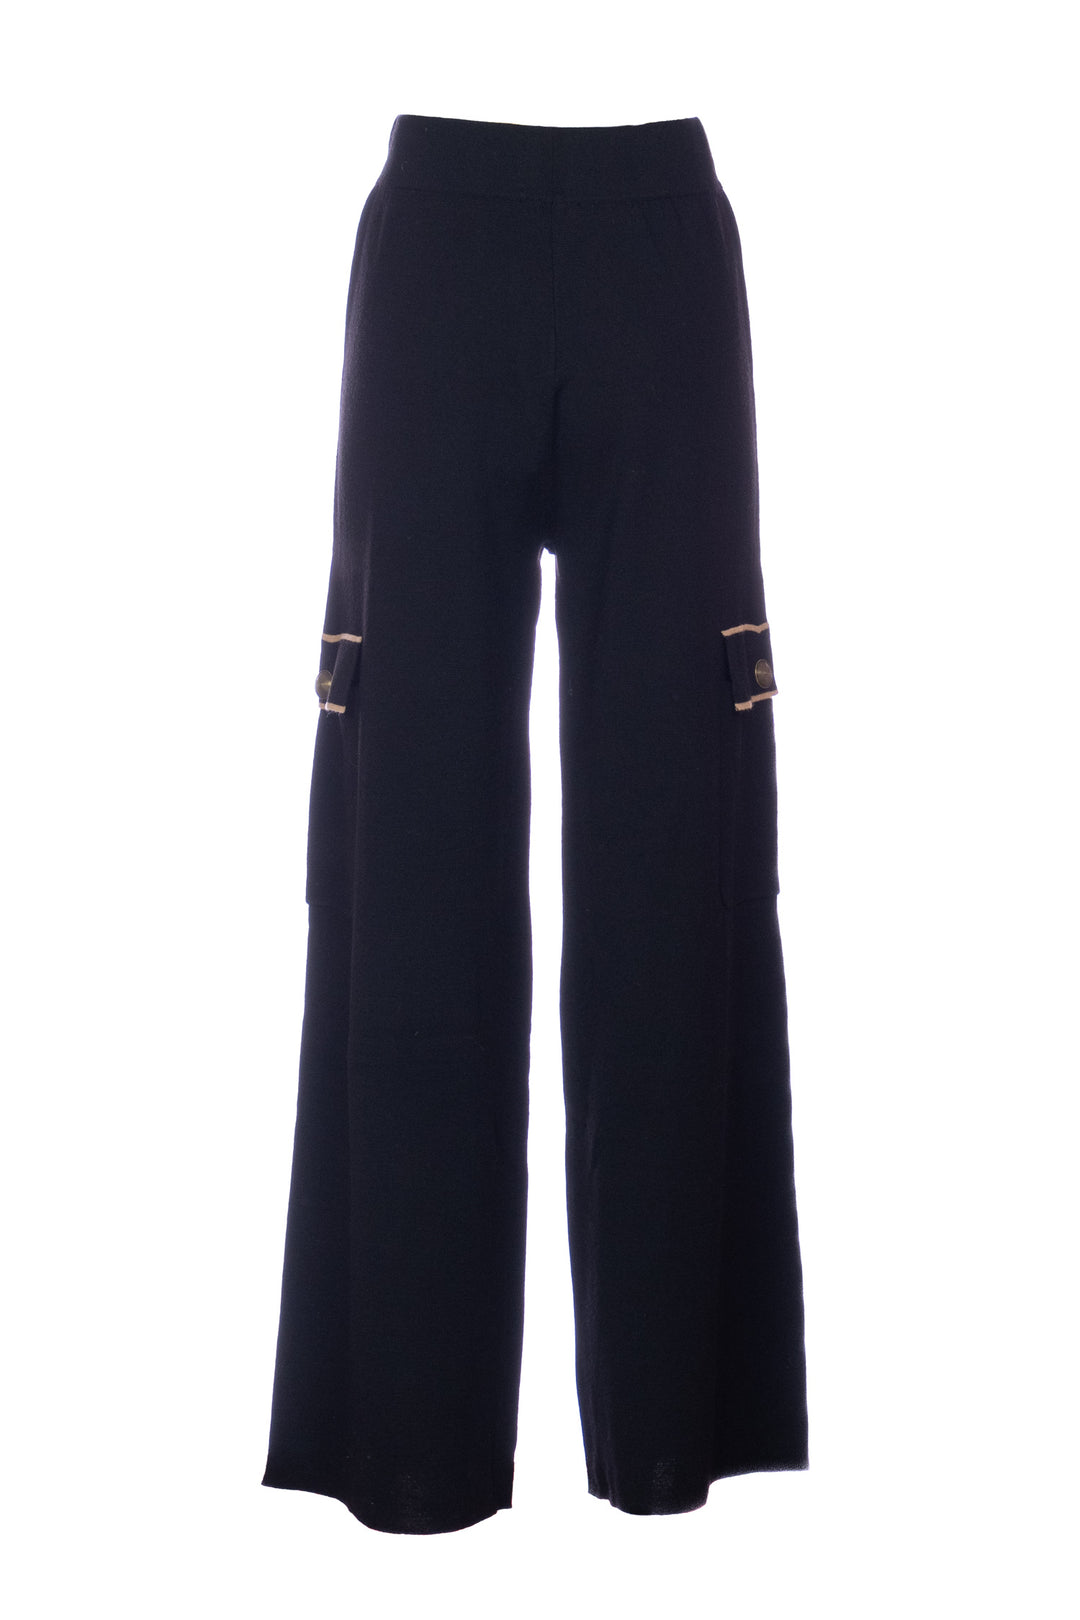 NENETTE Pantalone in maglia “YOUNG” nero in lana blend e dettagli a contrasto - Mancinelli 1954